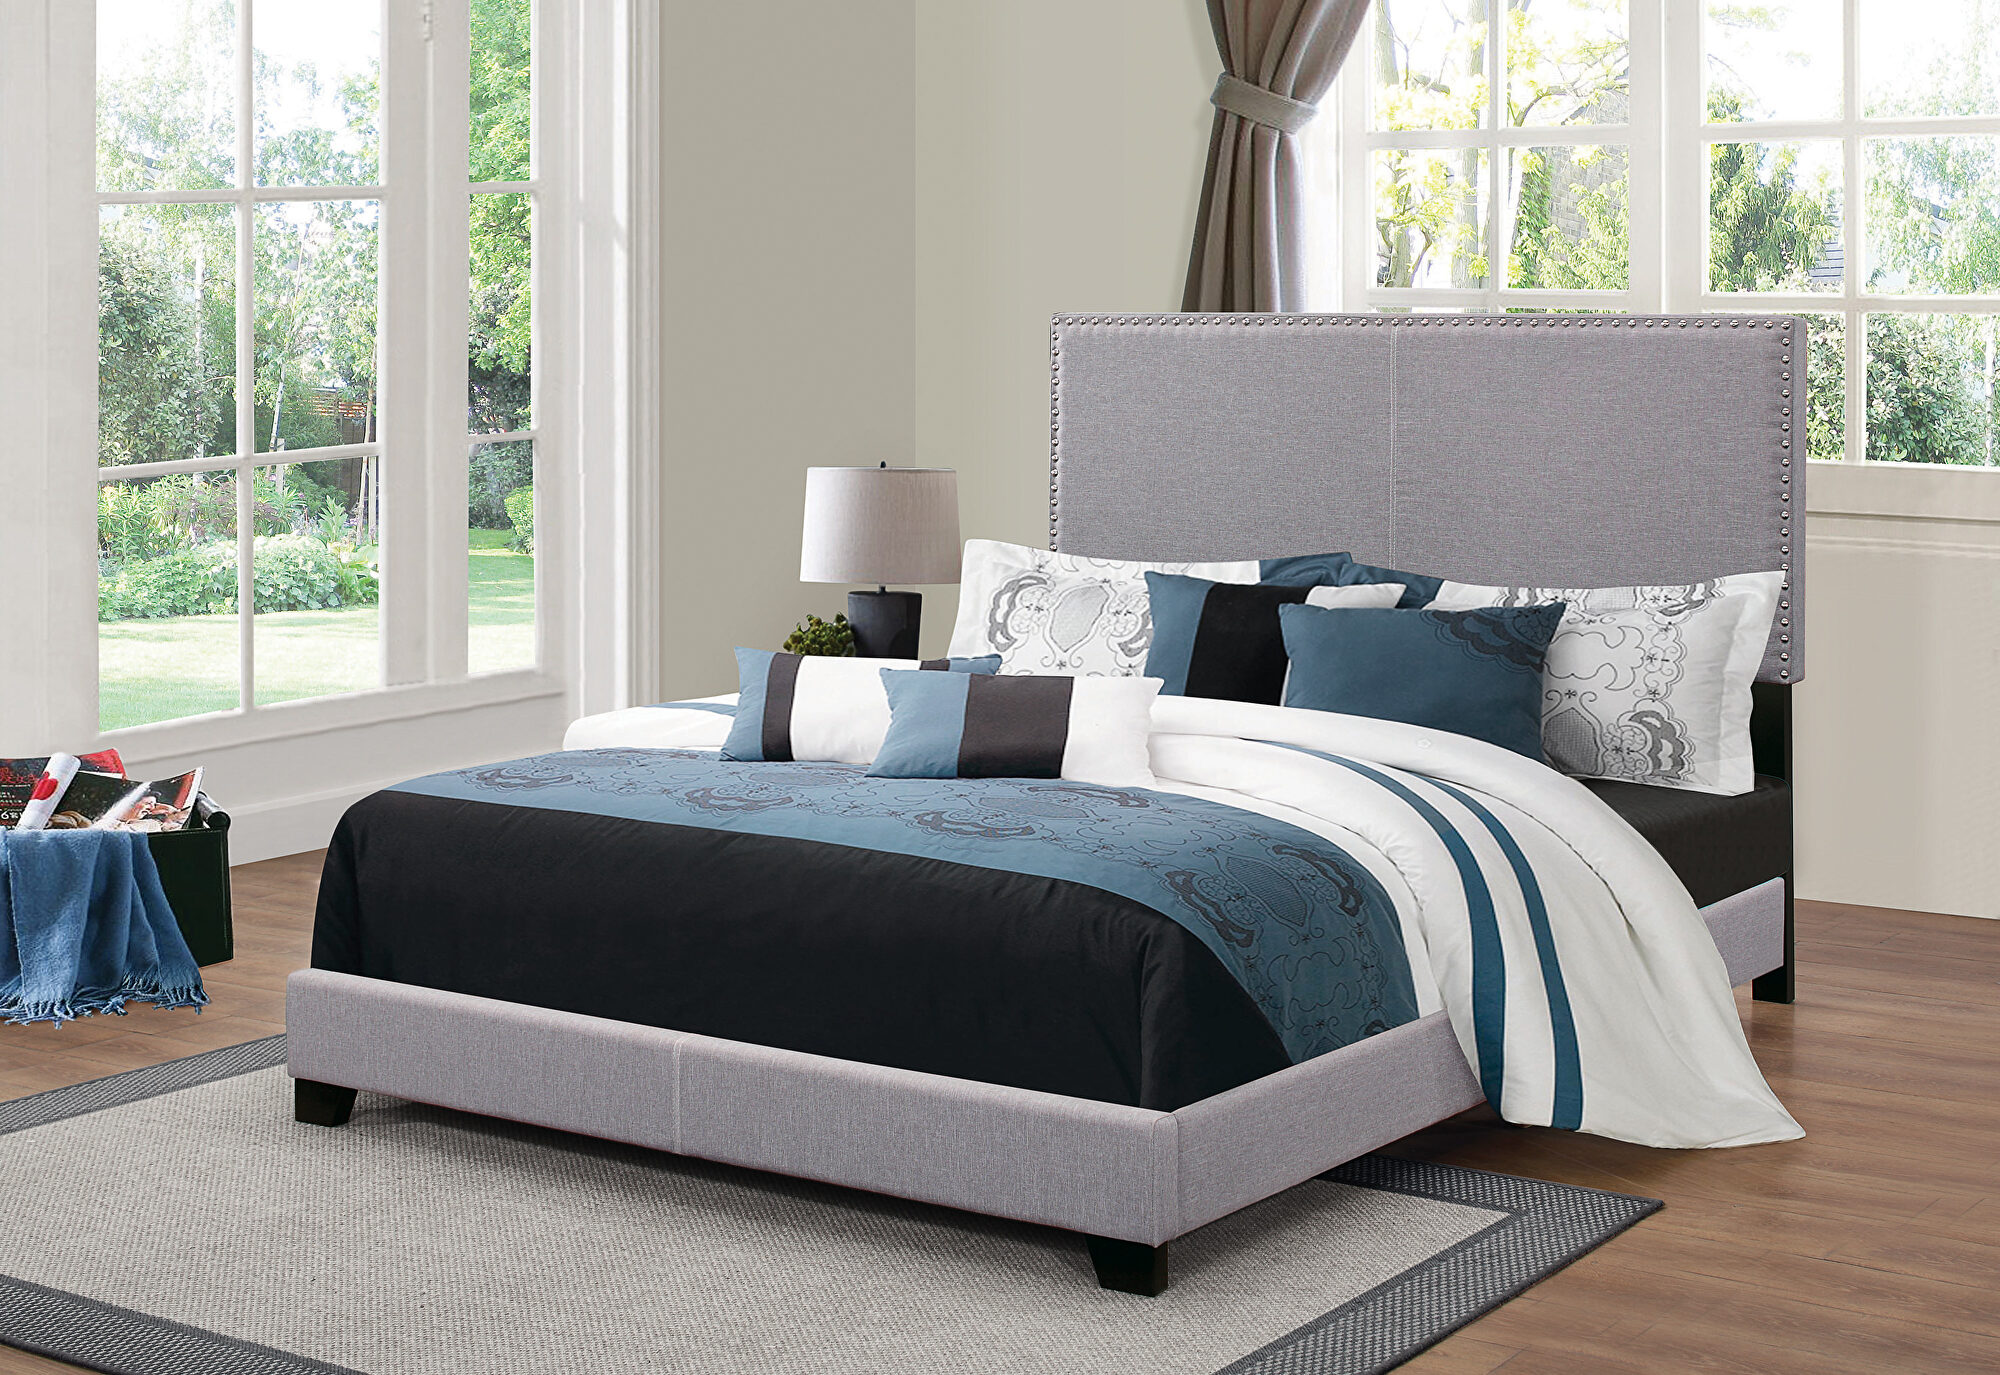 Рейтинг качества кроватей. Кровать для полных. Кровать полностью. Upholstered Bed. Upholstered Furniture website.